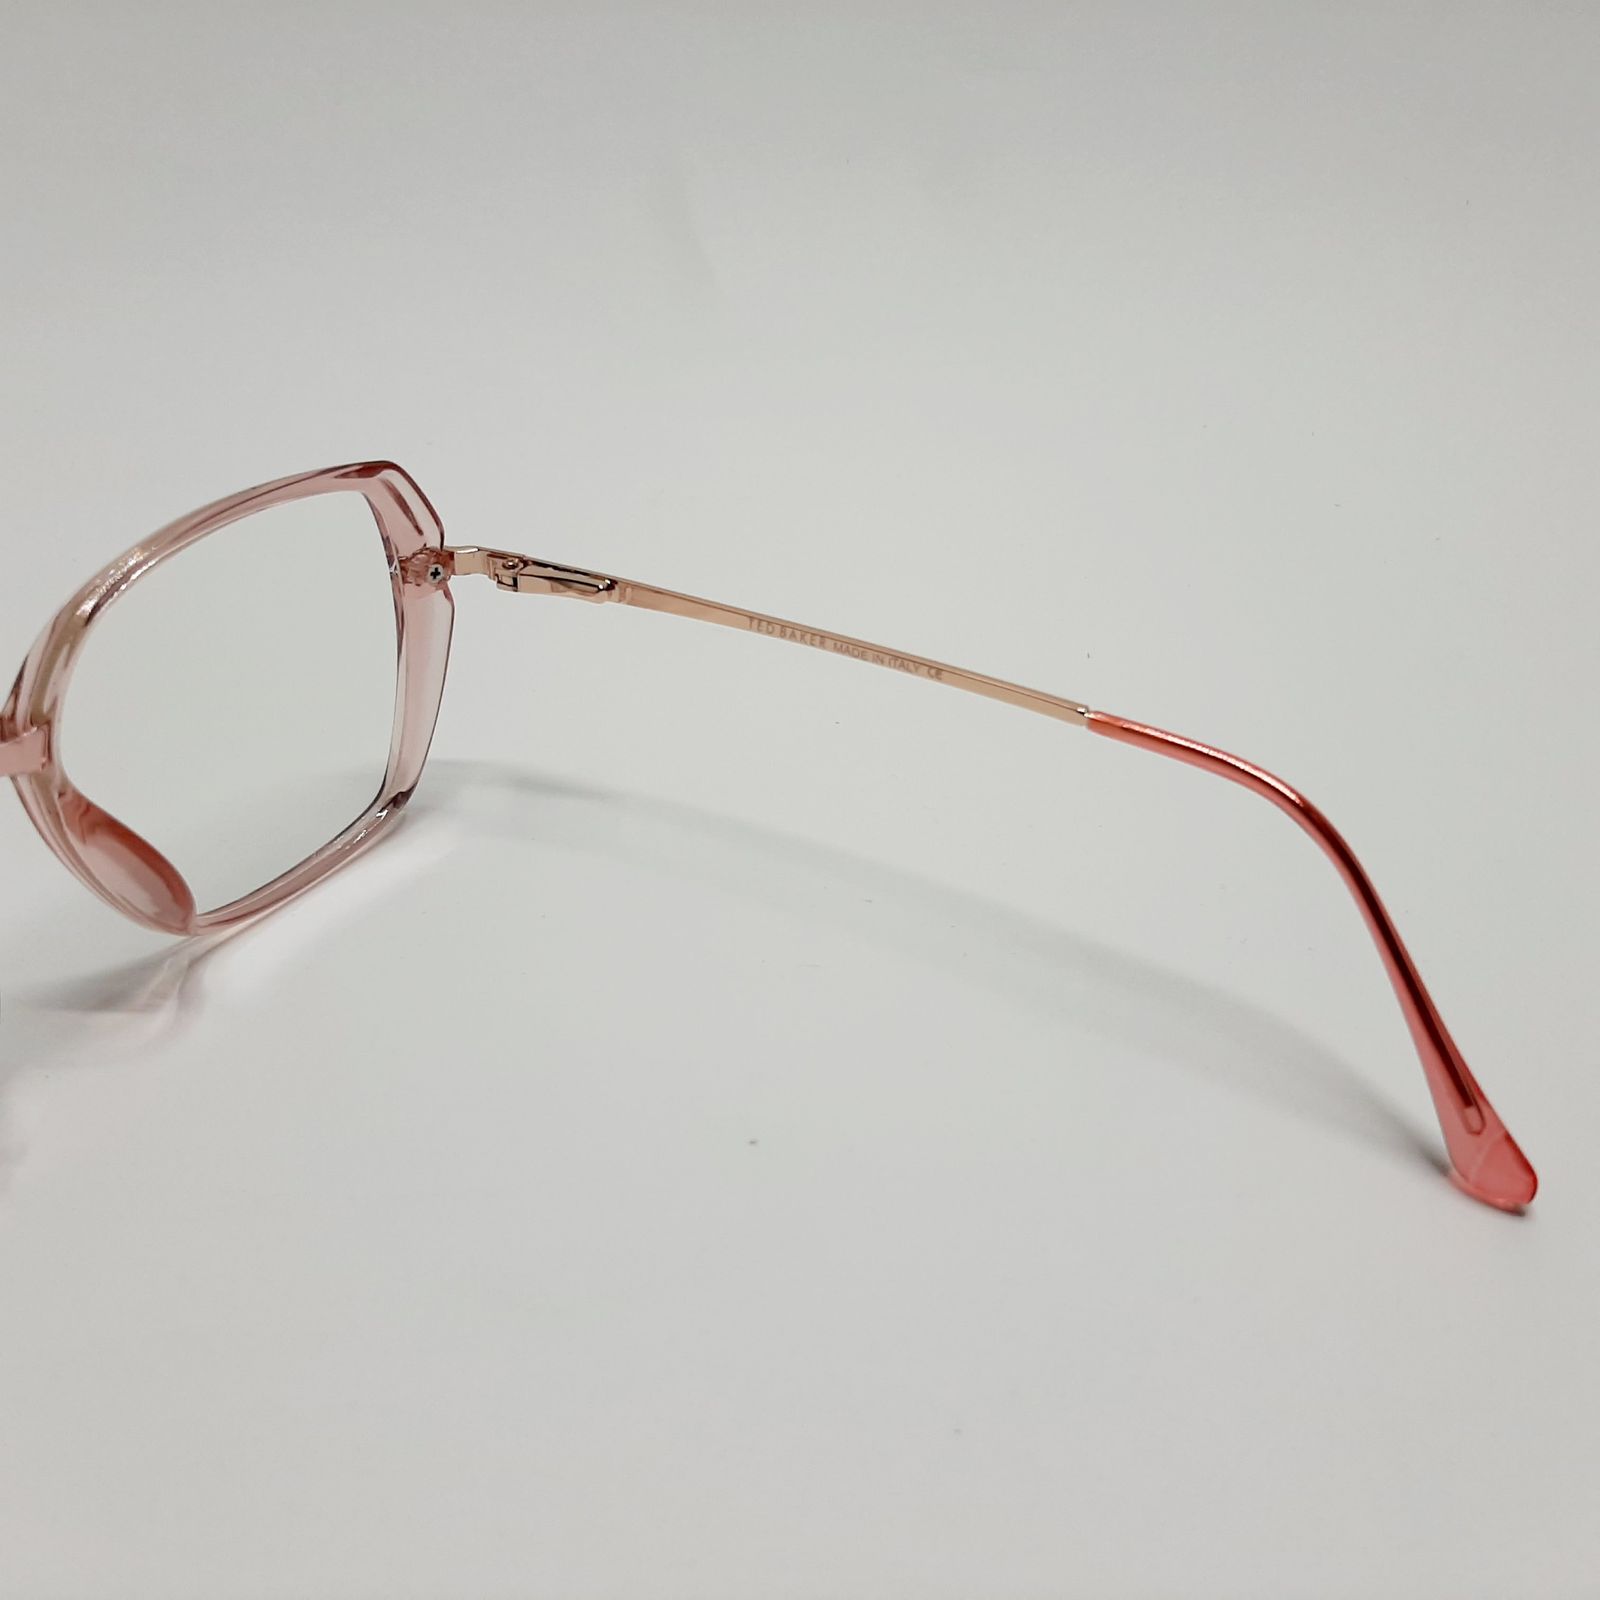 فریم عینک طبی زنانه تد بیکر مدل 95642c6 -  - 7